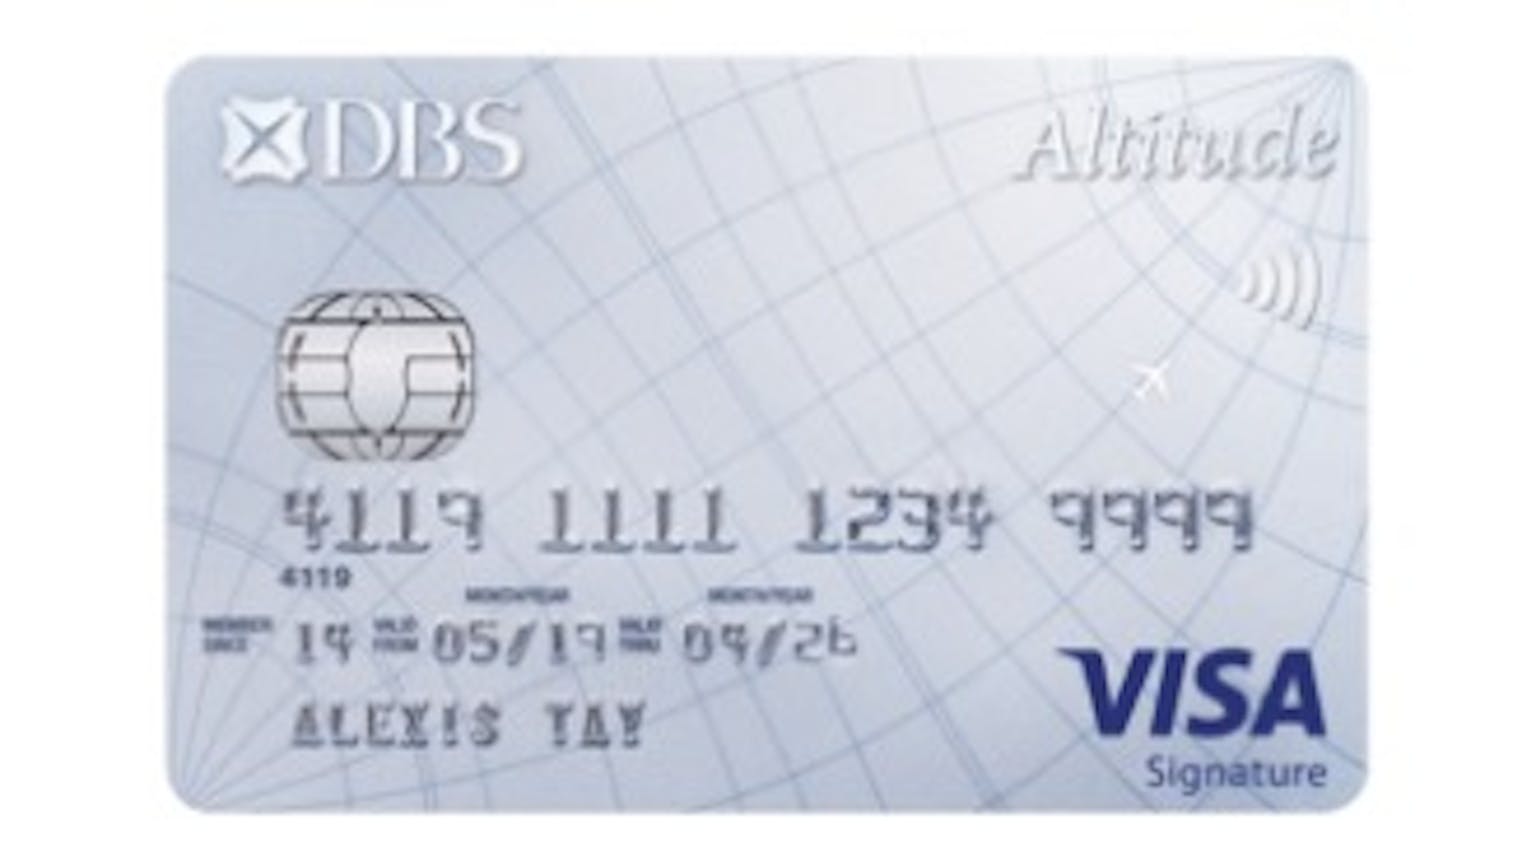 DBS Altitude VISA Signature